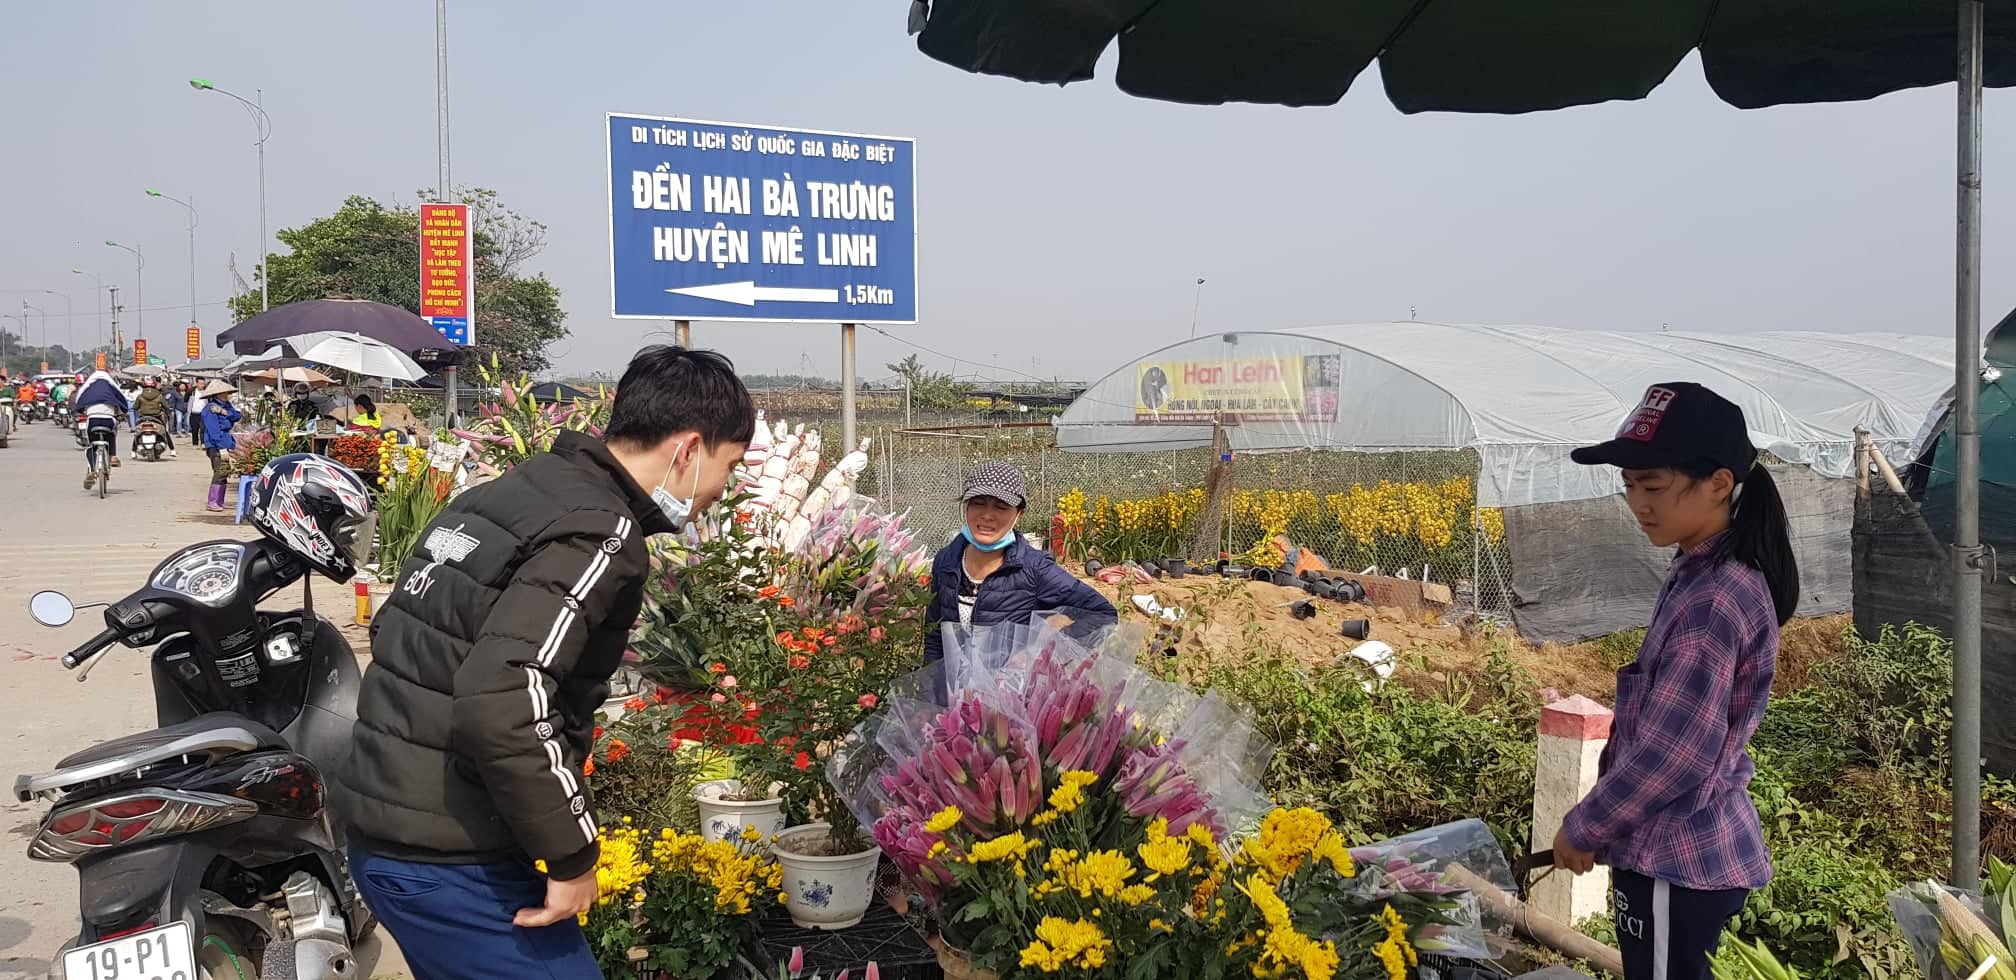 Nằm cách Hà Nội hơn 20km, huyện Mê Linh – một trong những thủ phủ hoa tươi lớn nhất Hà Nội là điểm đến của nhiều người dân thủ đô và các tỉnh lân cận trong những ngày cận Tết. 